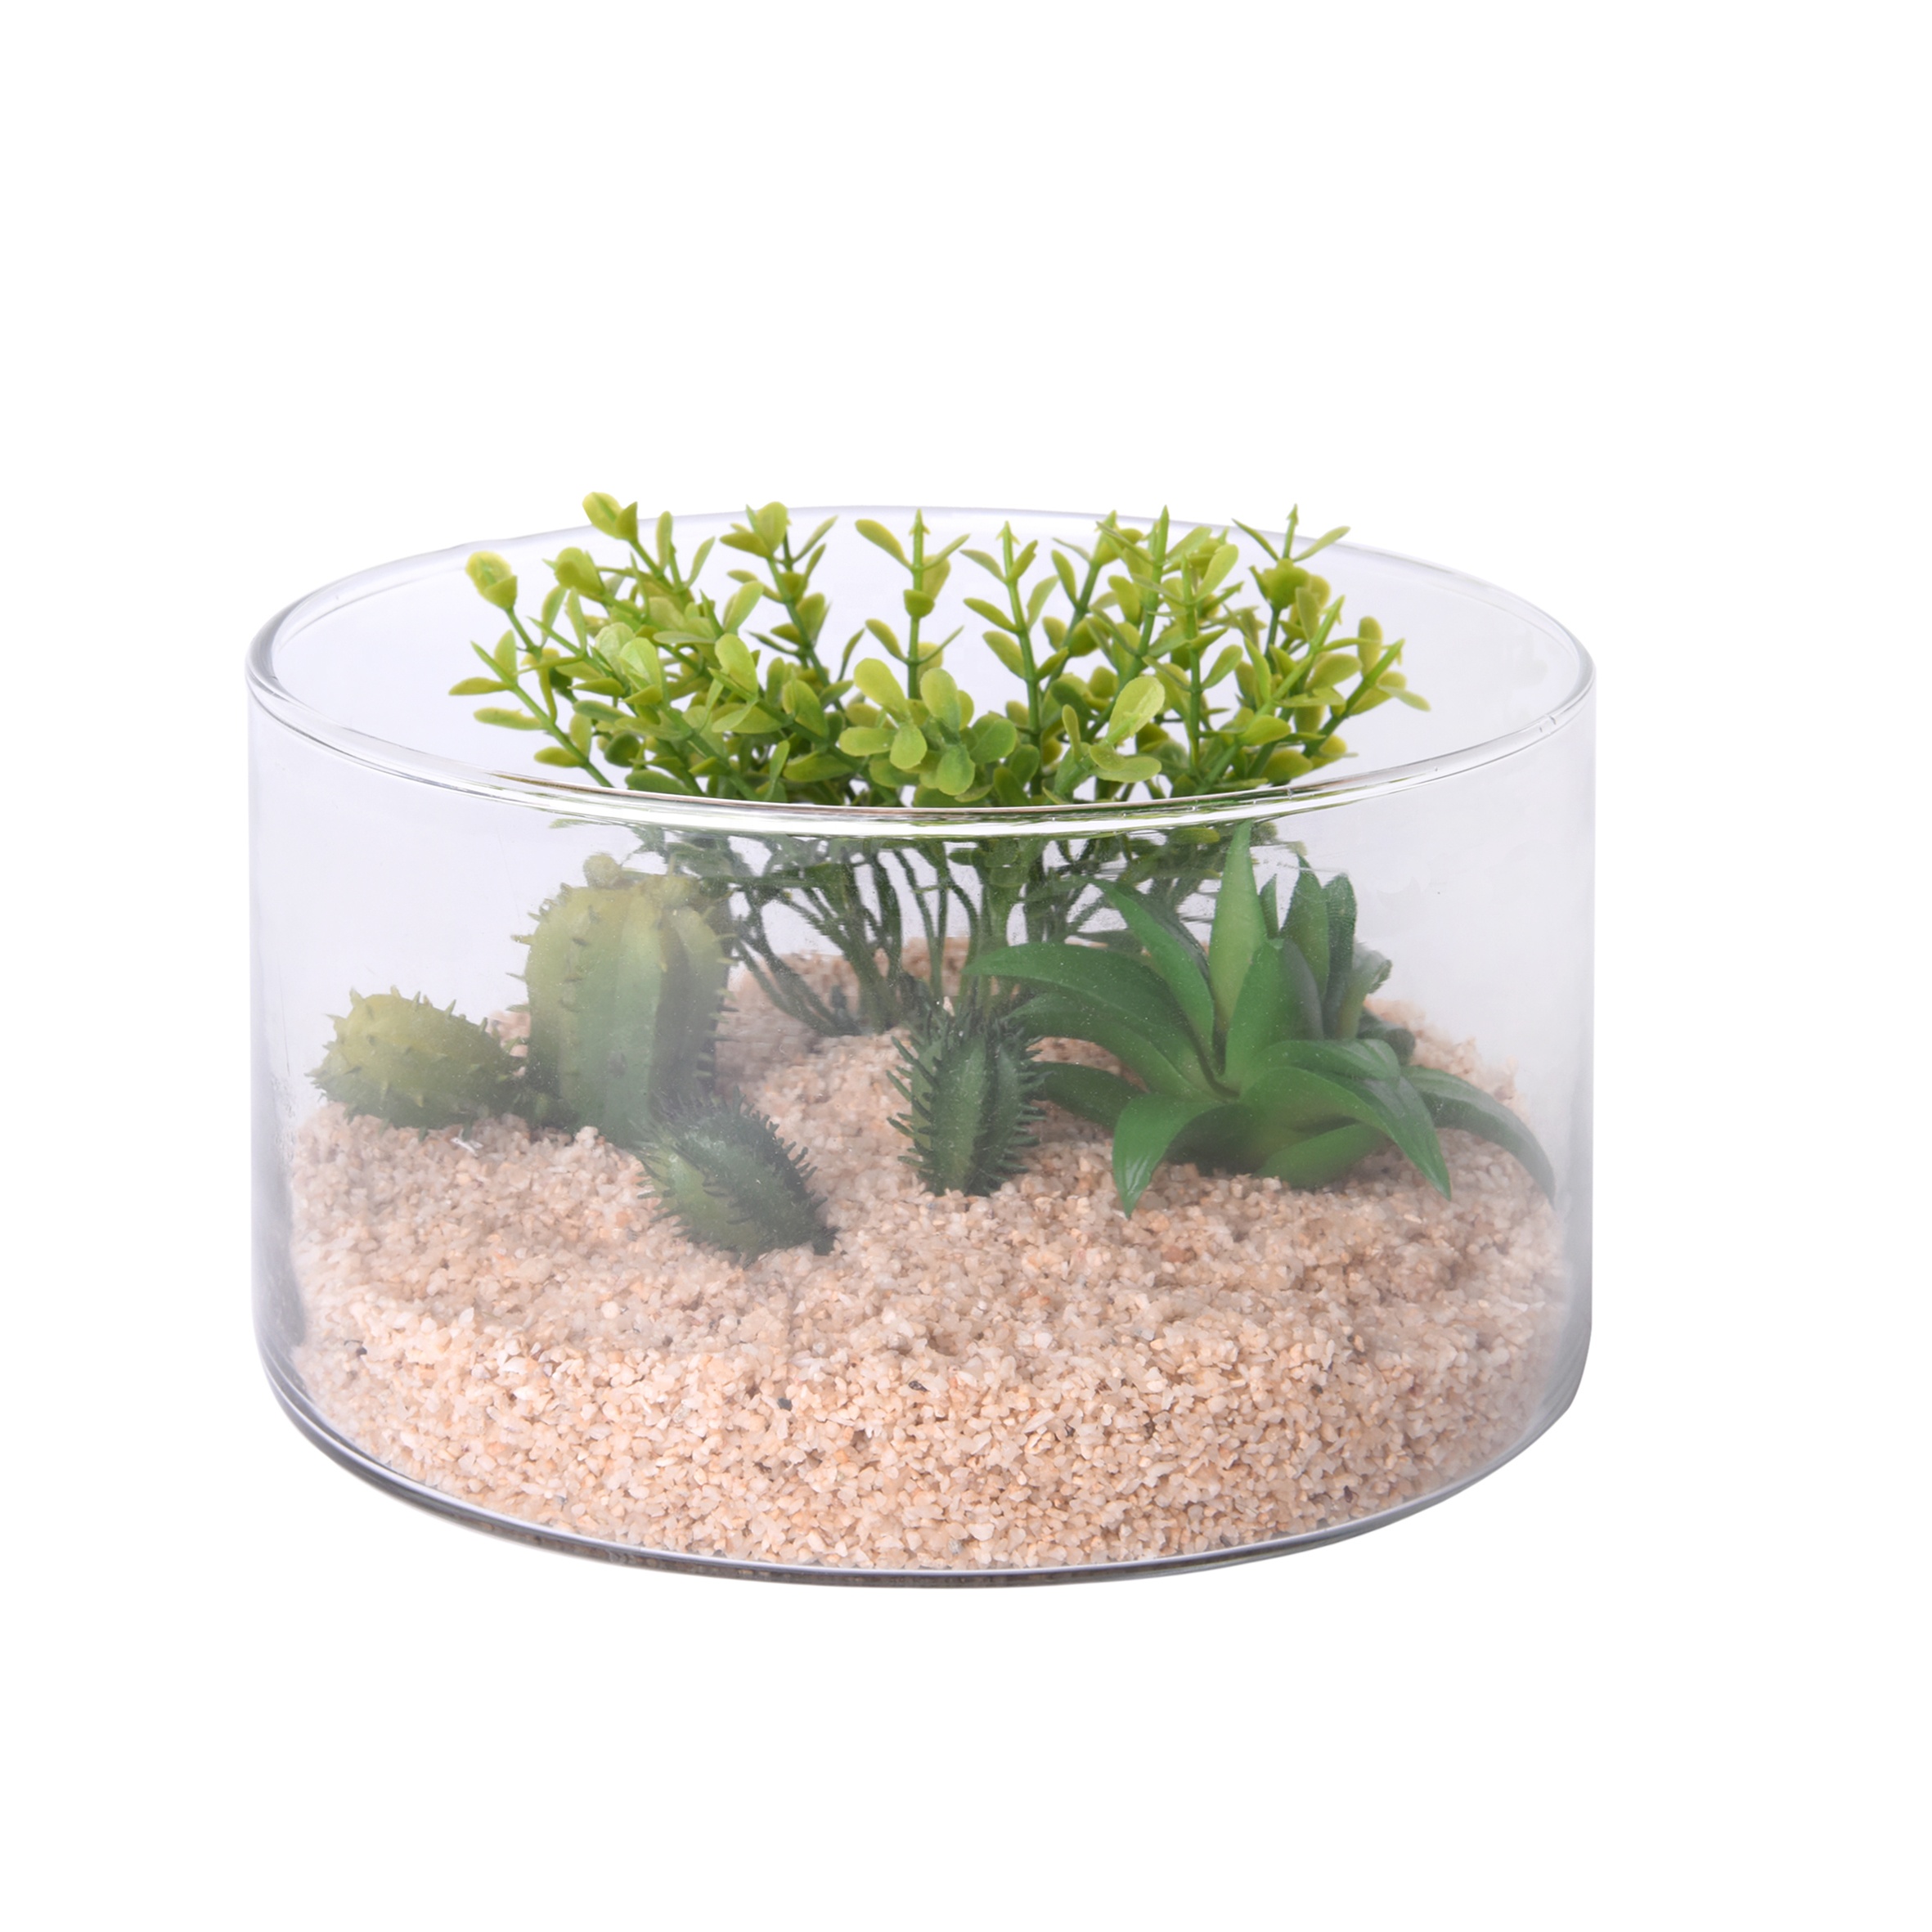 Hot sales glass plant terrarium with artificial succulent planter pot